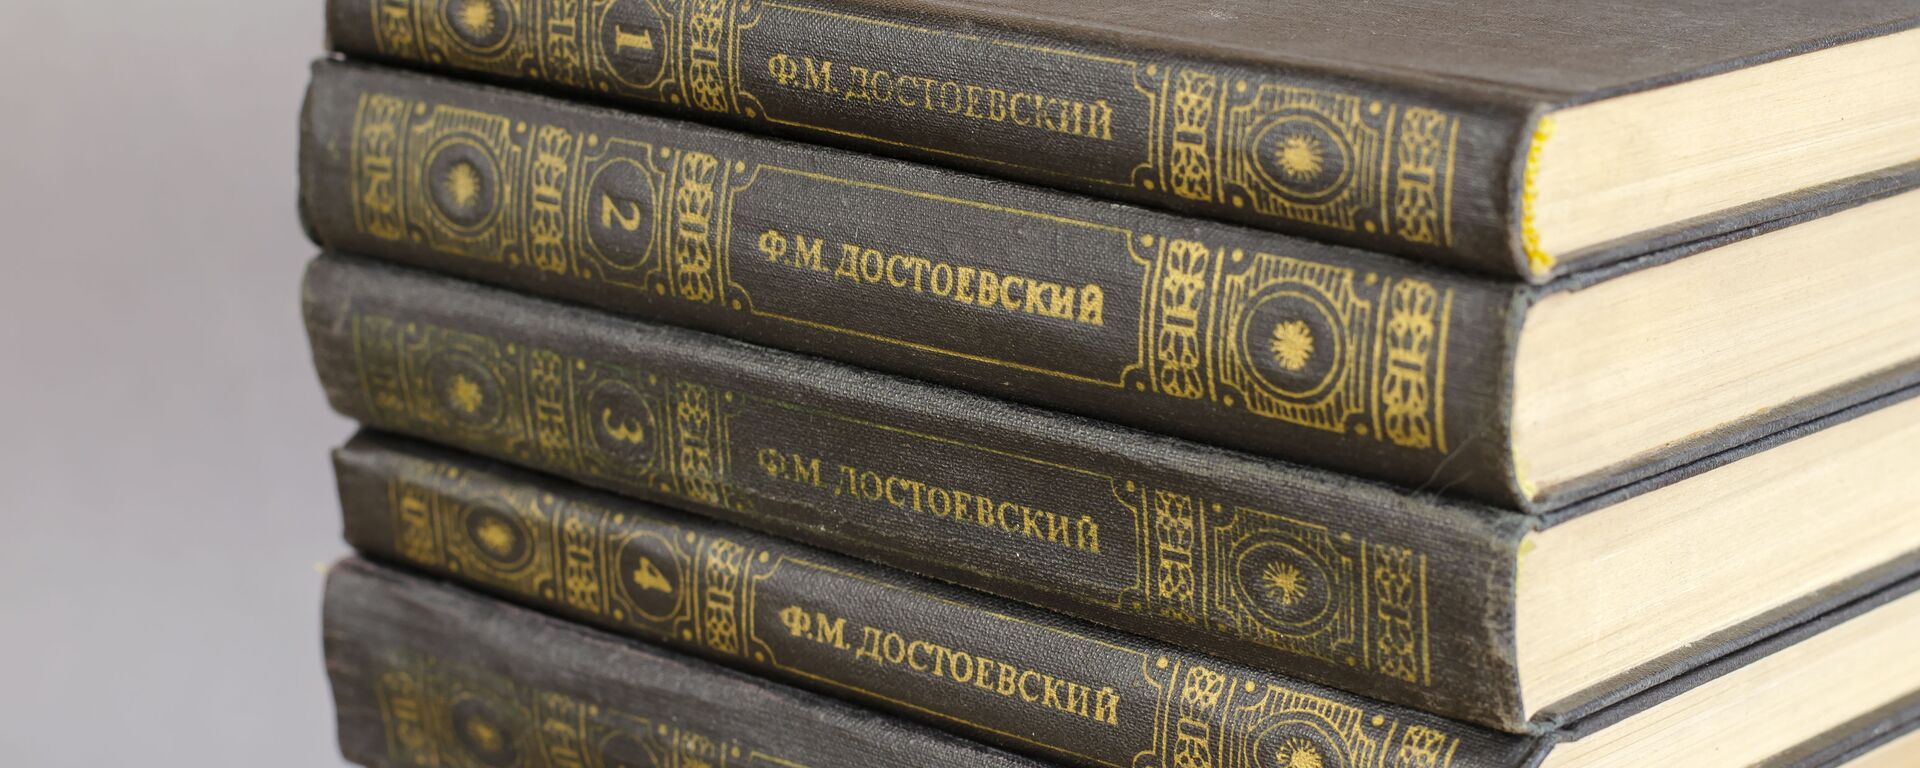 Các tác phẩm sưu tầm của F.M. Dostoevsky - Sputnik Việt Nam, 1920, 10.11.2021